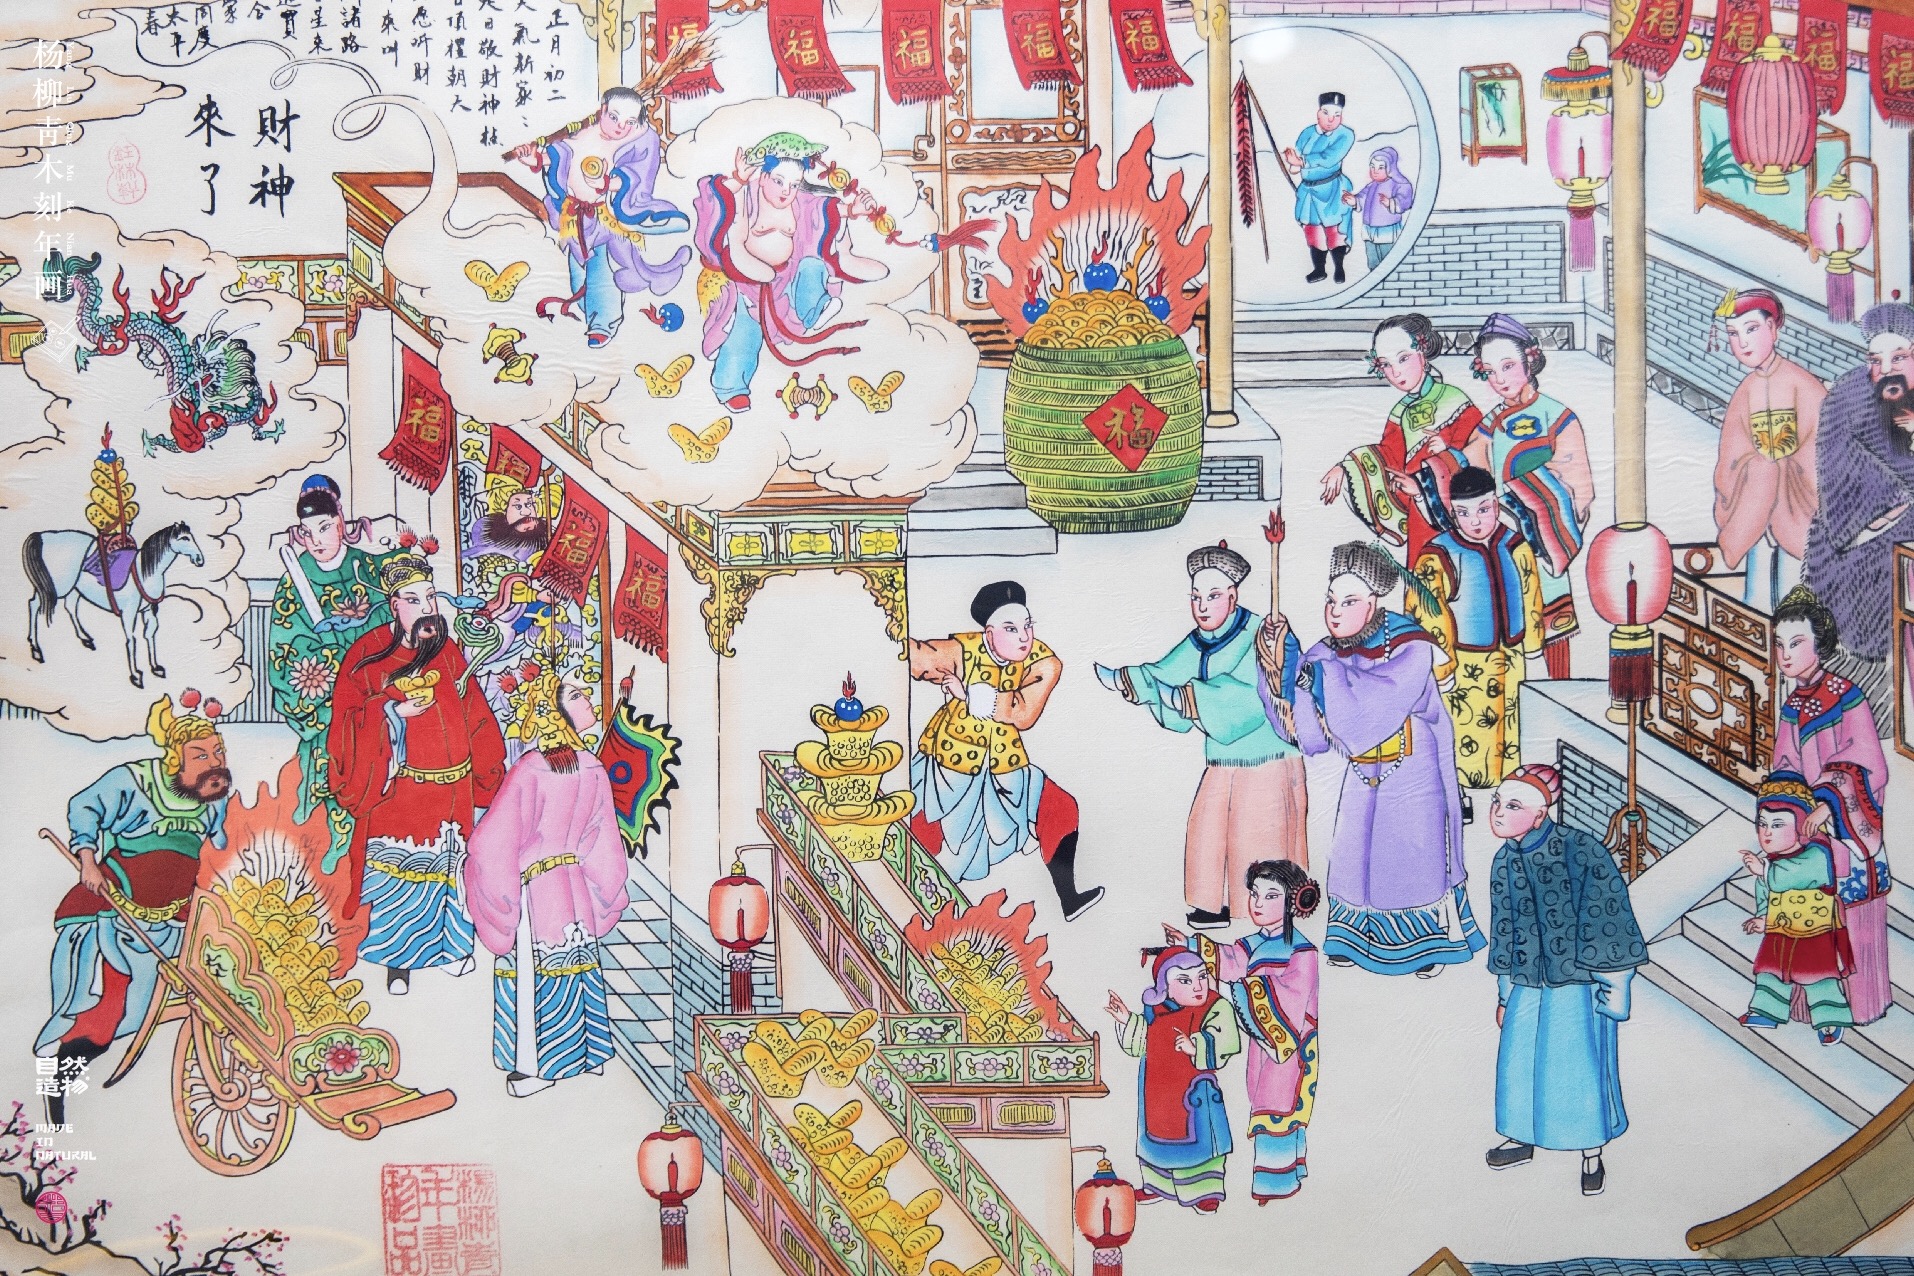 杨柳青木版年画 - 堆糖,美图壁纸兴趣社区